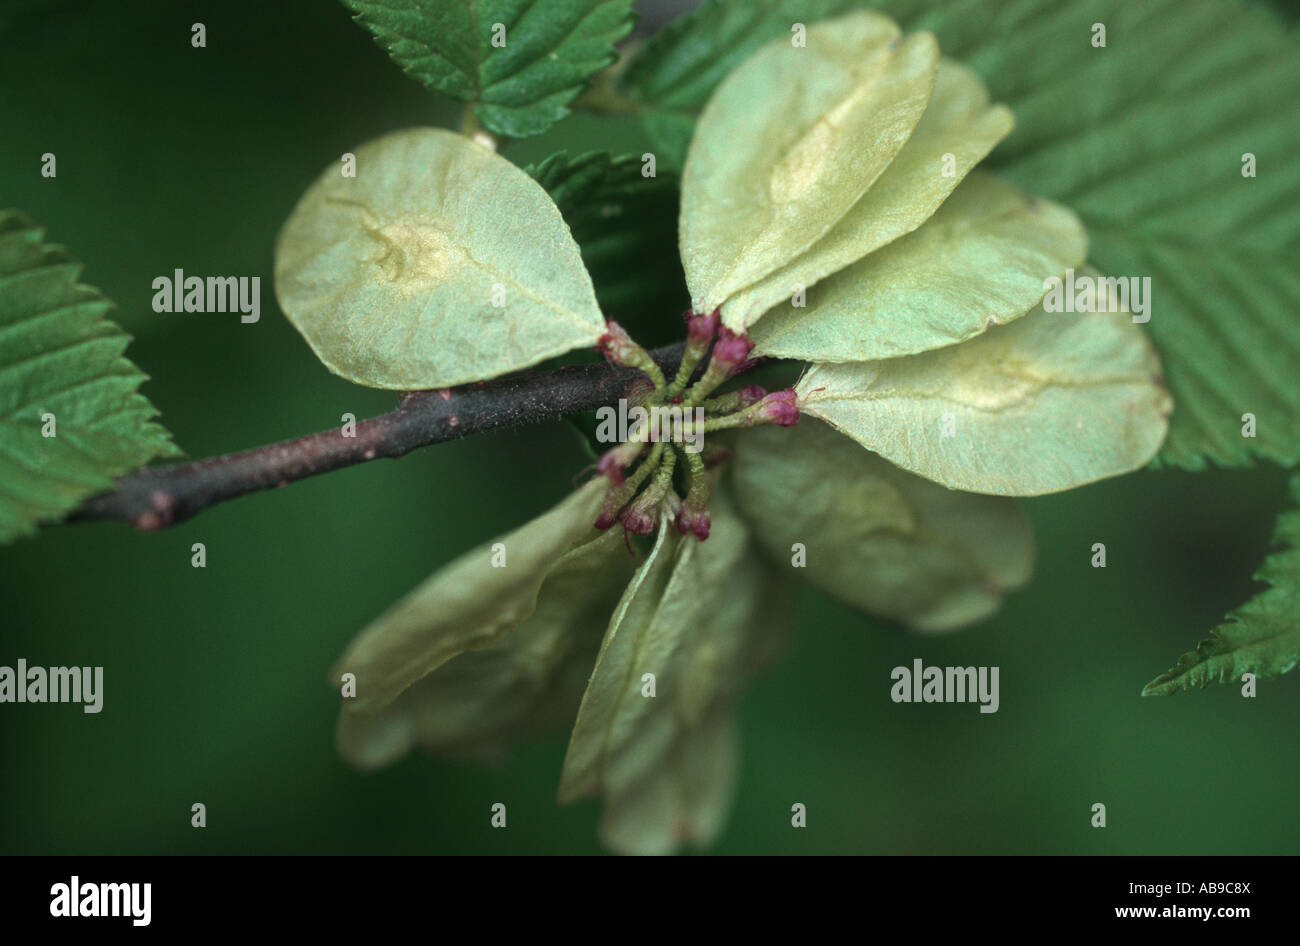 Scotch elm, wych elm (Ulmus glabra, Ulmus scabra), fruits Stock Photo